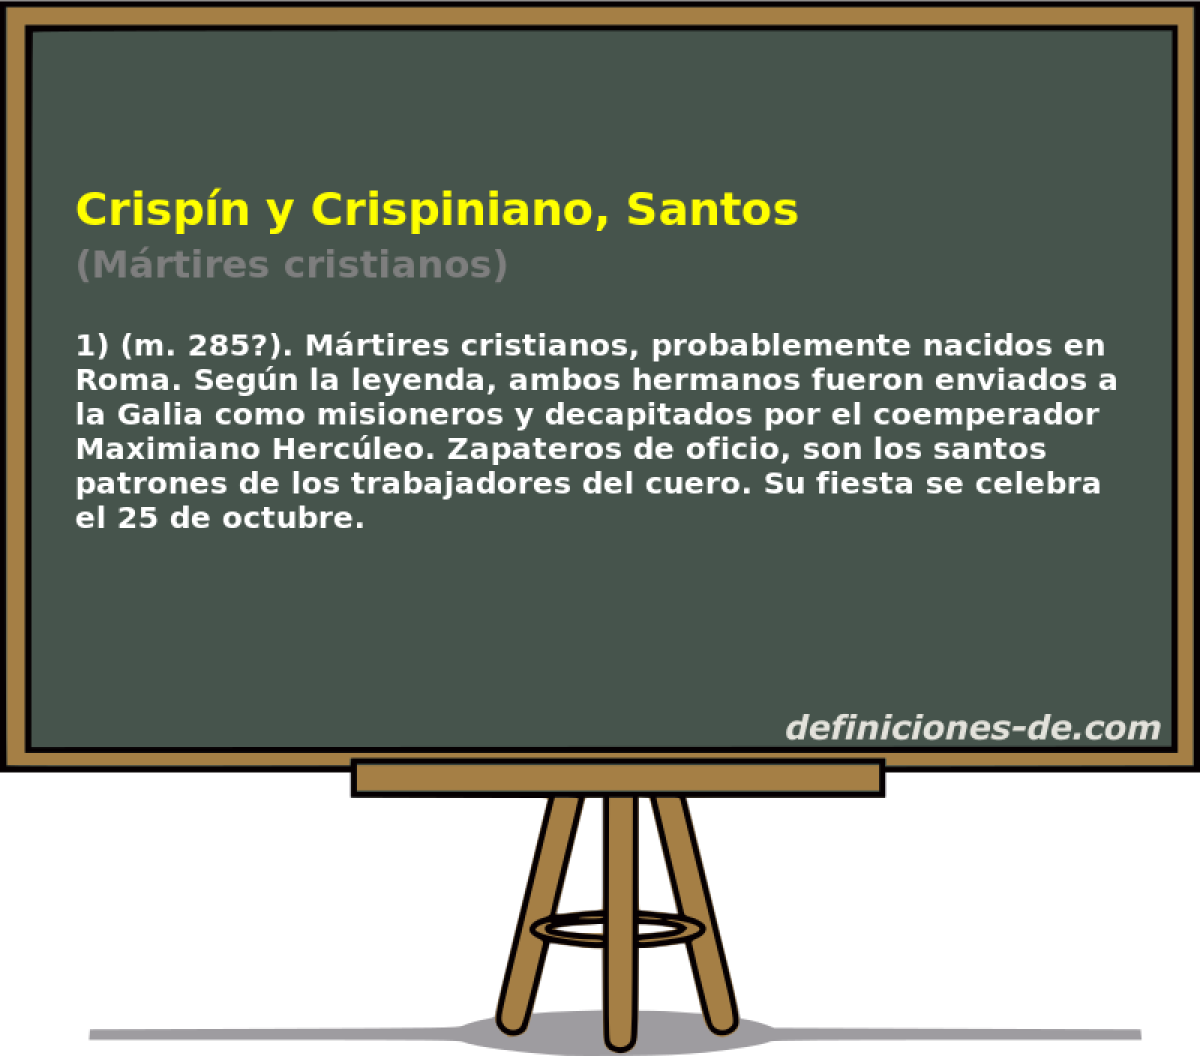 Crispn y Crispiniano, Santos (Mrtires cristianos)